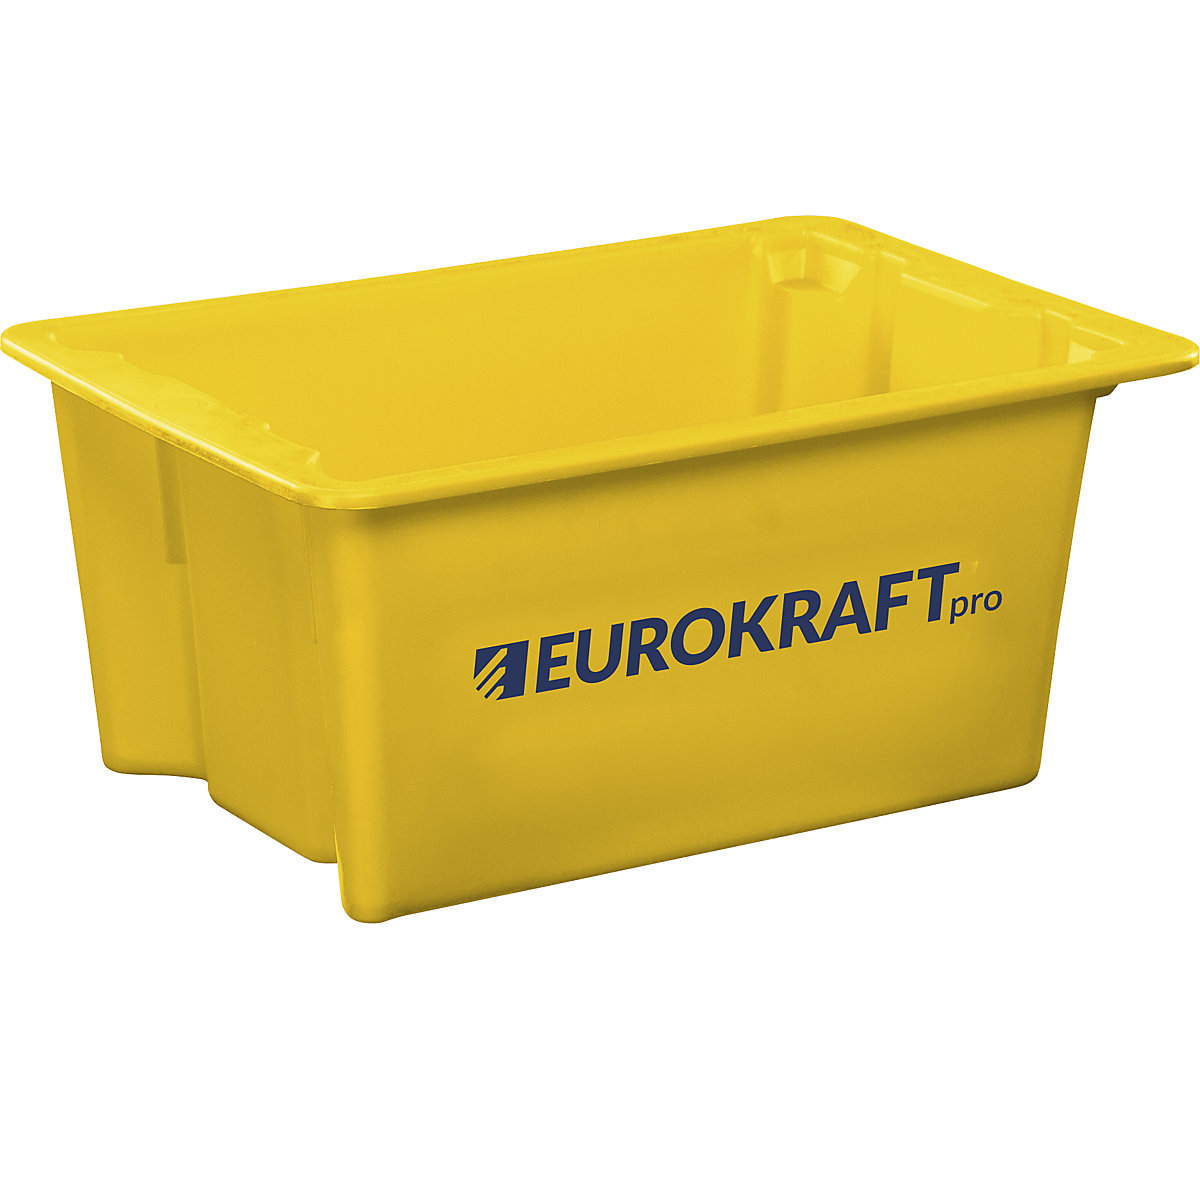 Recipiente empilhável giratório em polipropileno próprio para alimentos – eurokraft pro